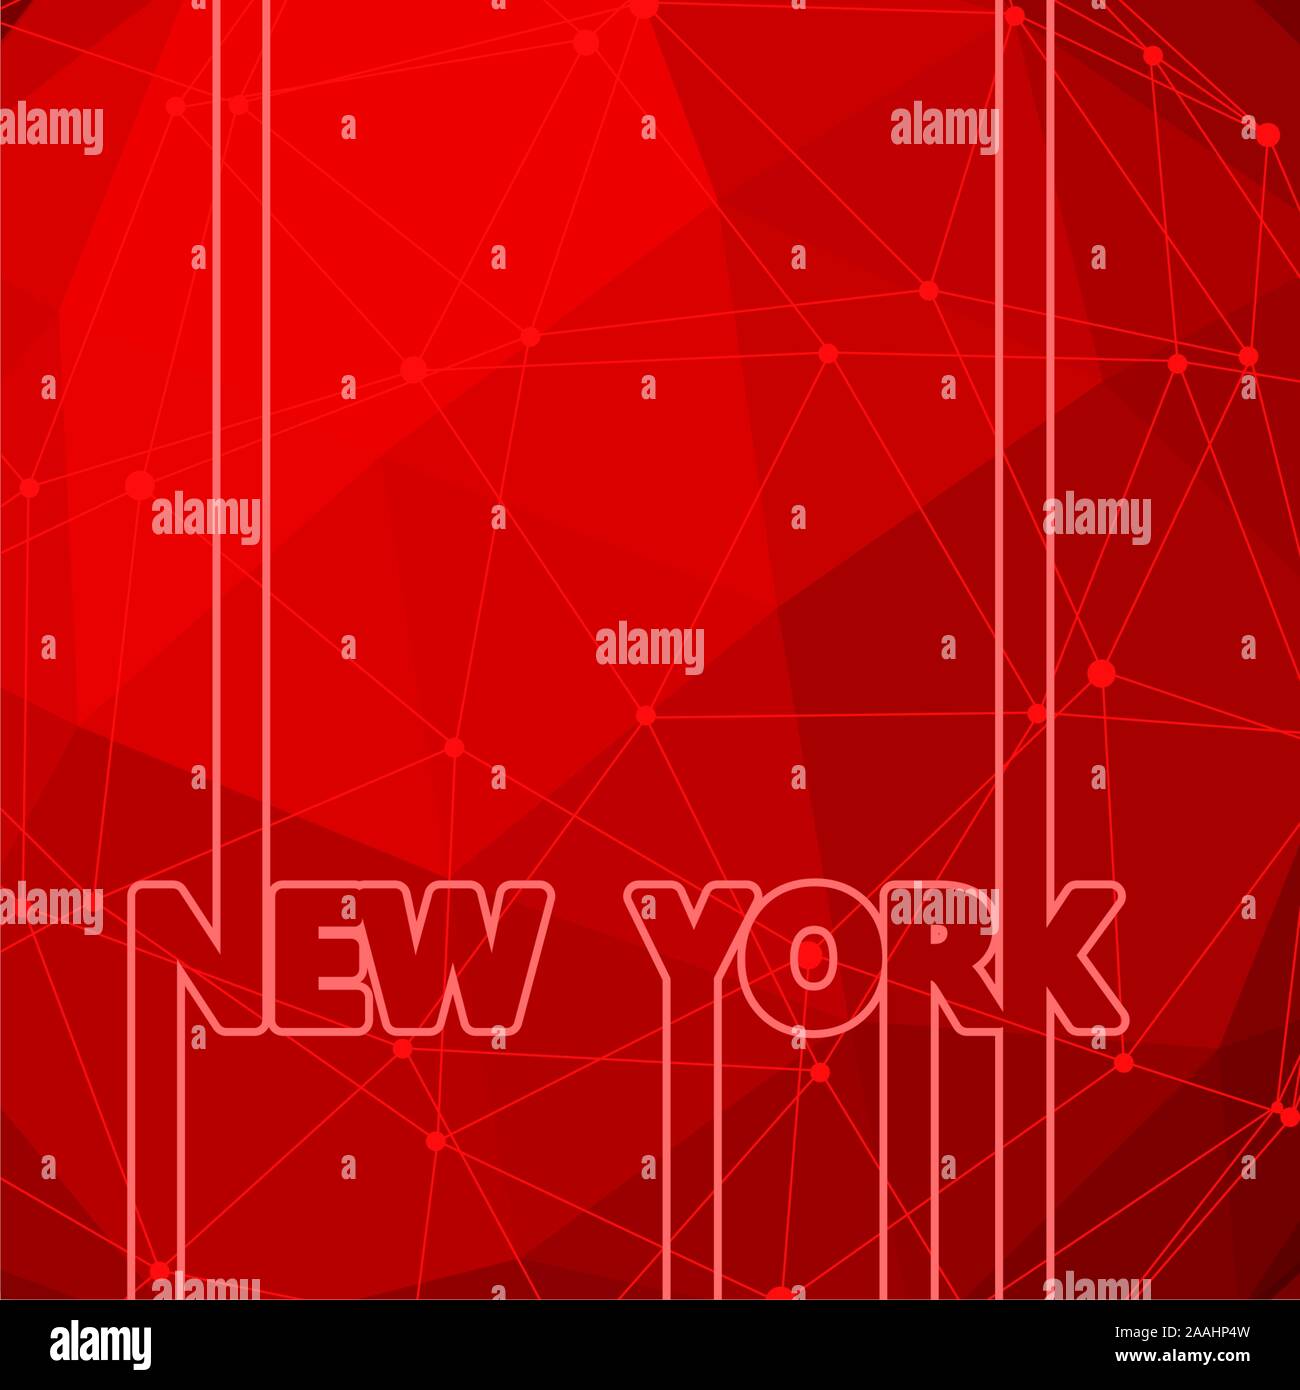 New York city Name in der Geometrie. Kreative vintage Typografie poster Konzept. Neonröhren Buchstaben. Molekül und Kommunikation Hintergrund. Co Stock Vektor